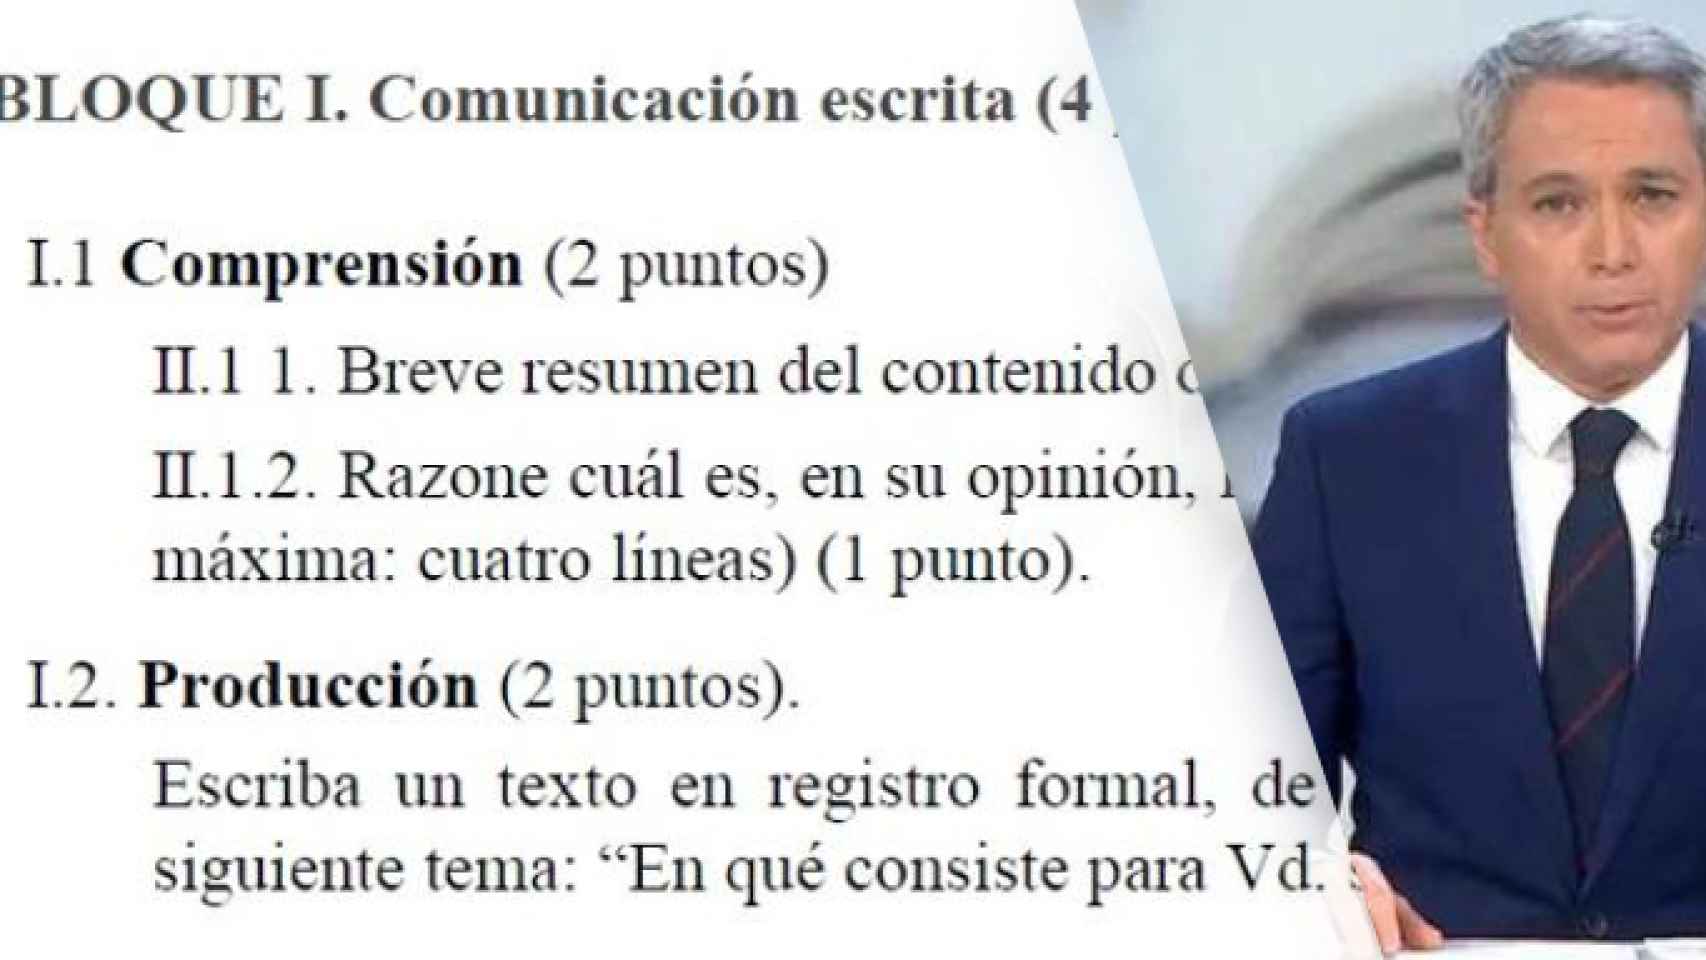 CCOO considera inadmisible que la PAU valenciana eligiera un texto de Vicente Vallés